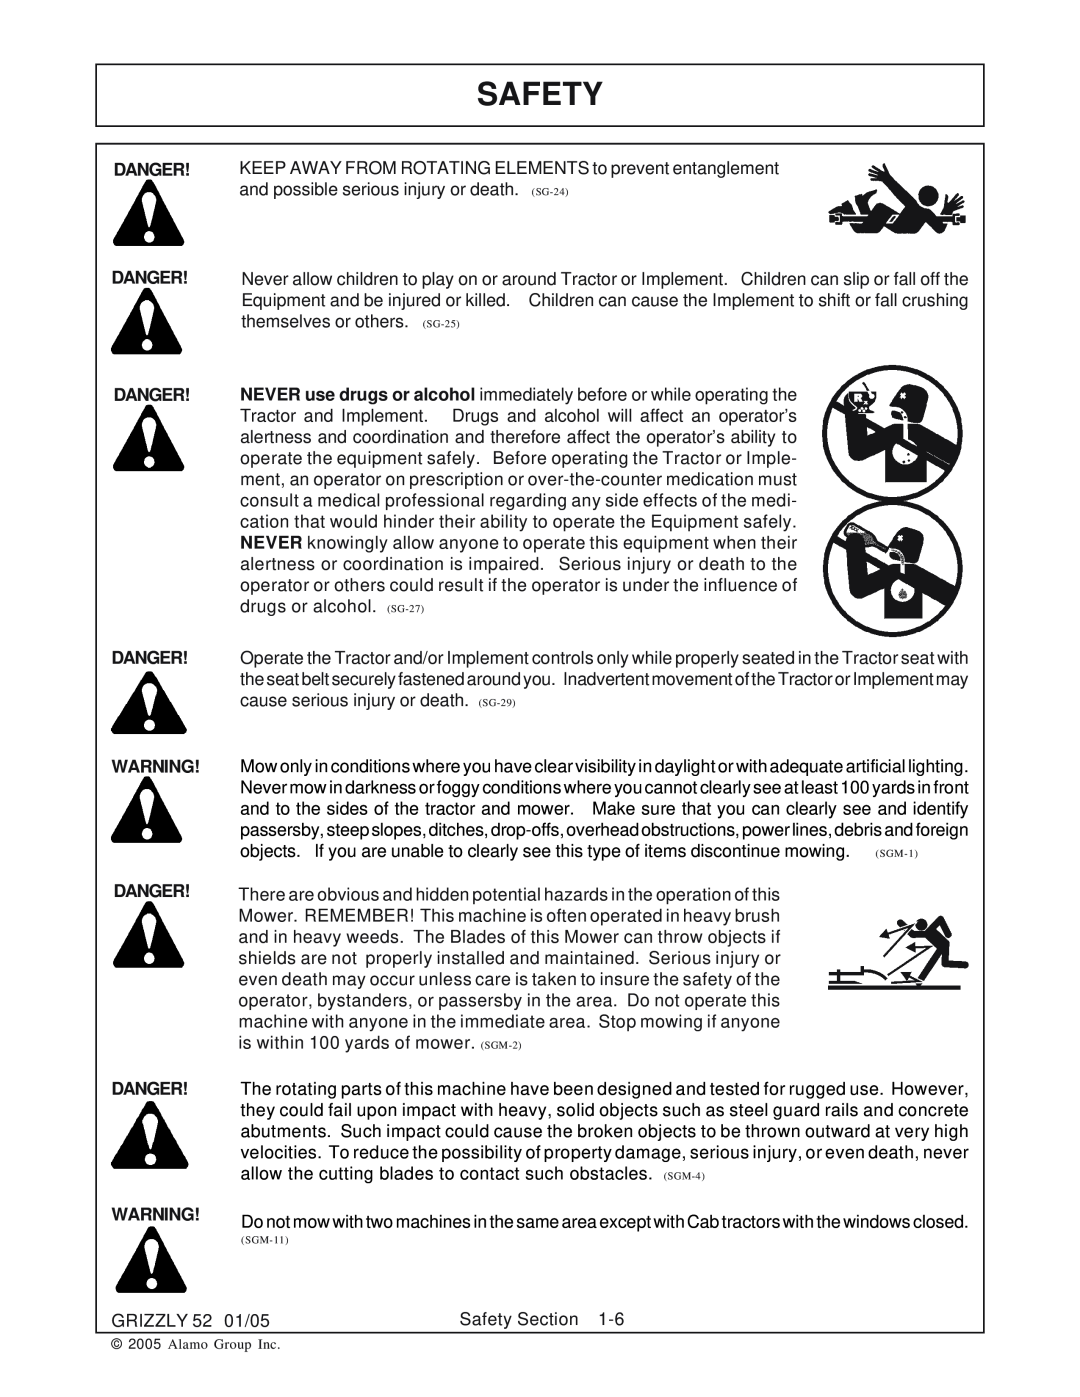 Grizzly 52 manual Safety, Danger Danger Danger 